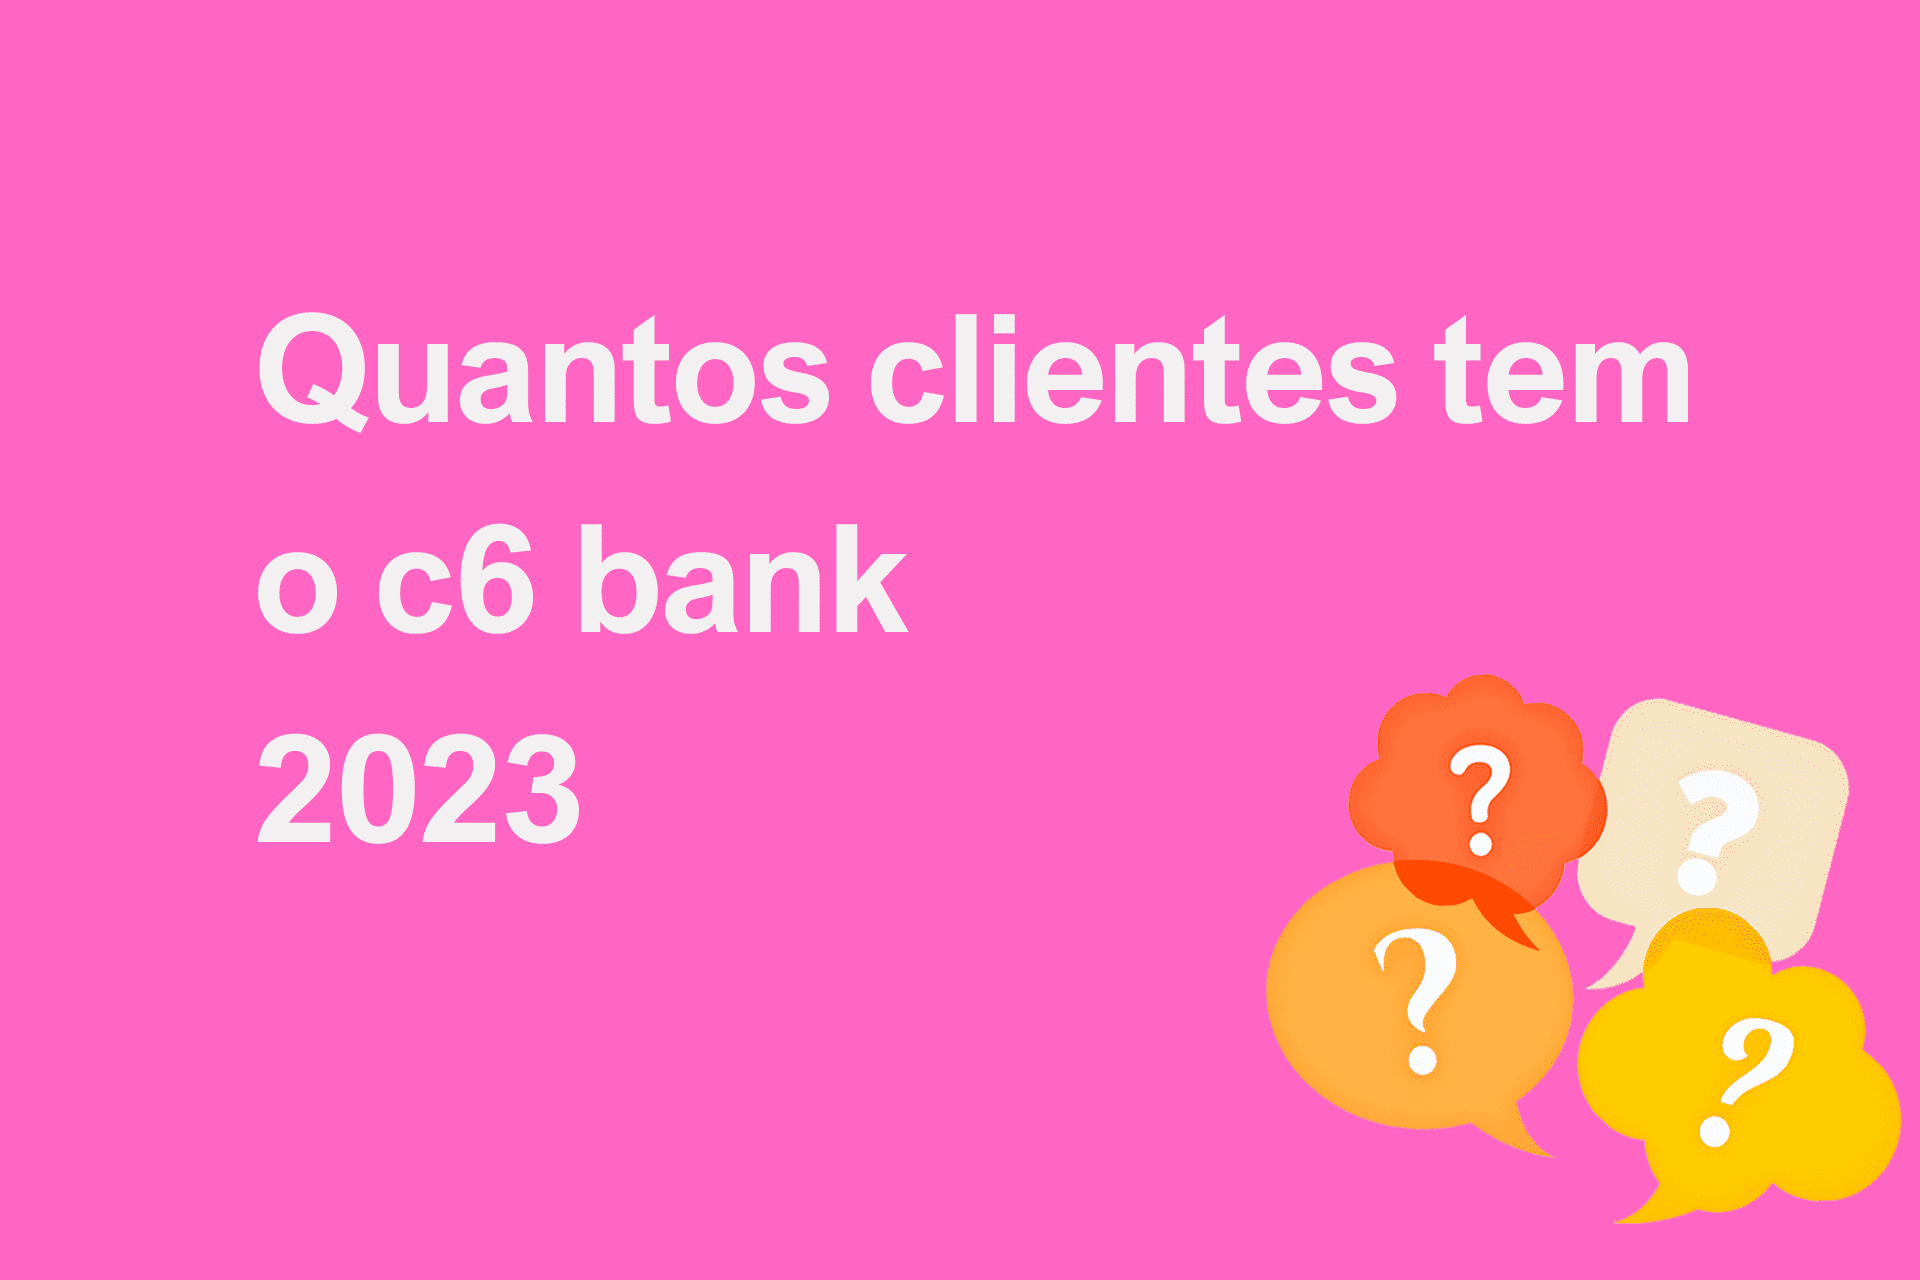 Quantos clientes tem o c6 bank 2023?